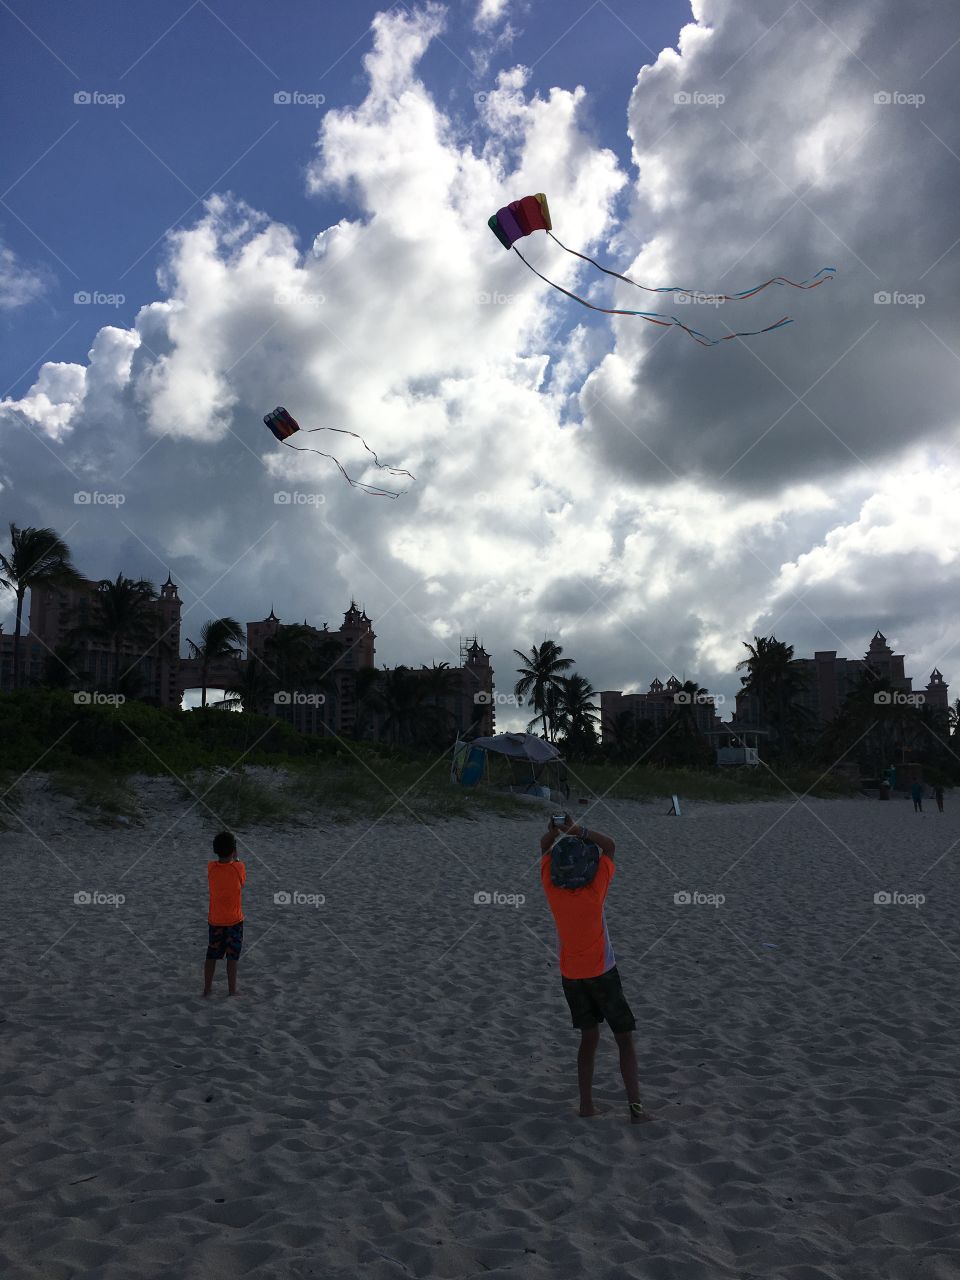 Children flying kites on beach